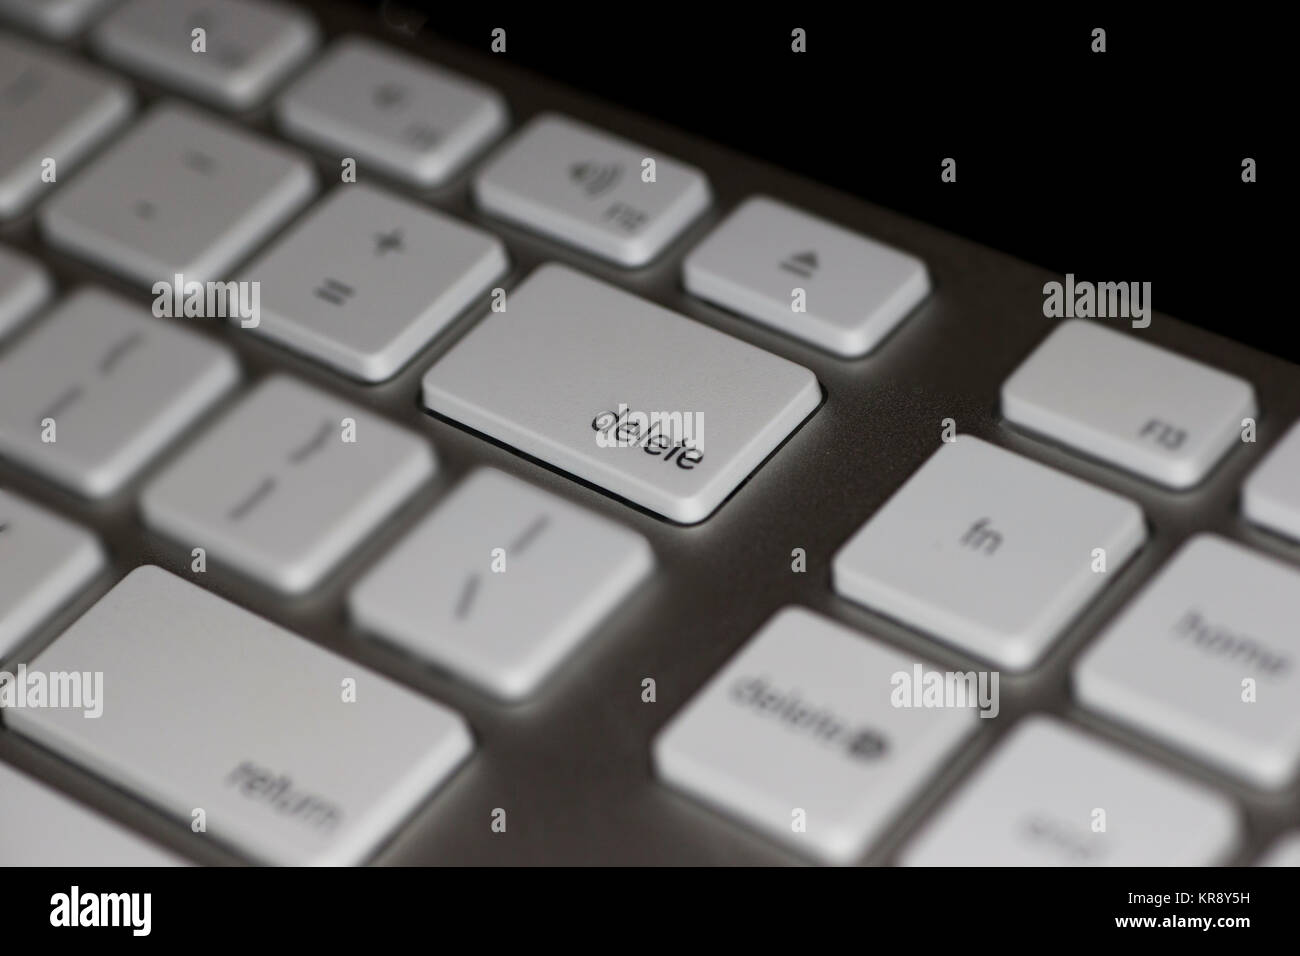 Vista dettagliata del tasto Canc sulla tastiera del computer con tasti bianchi su sfondo scuro Foto Stock